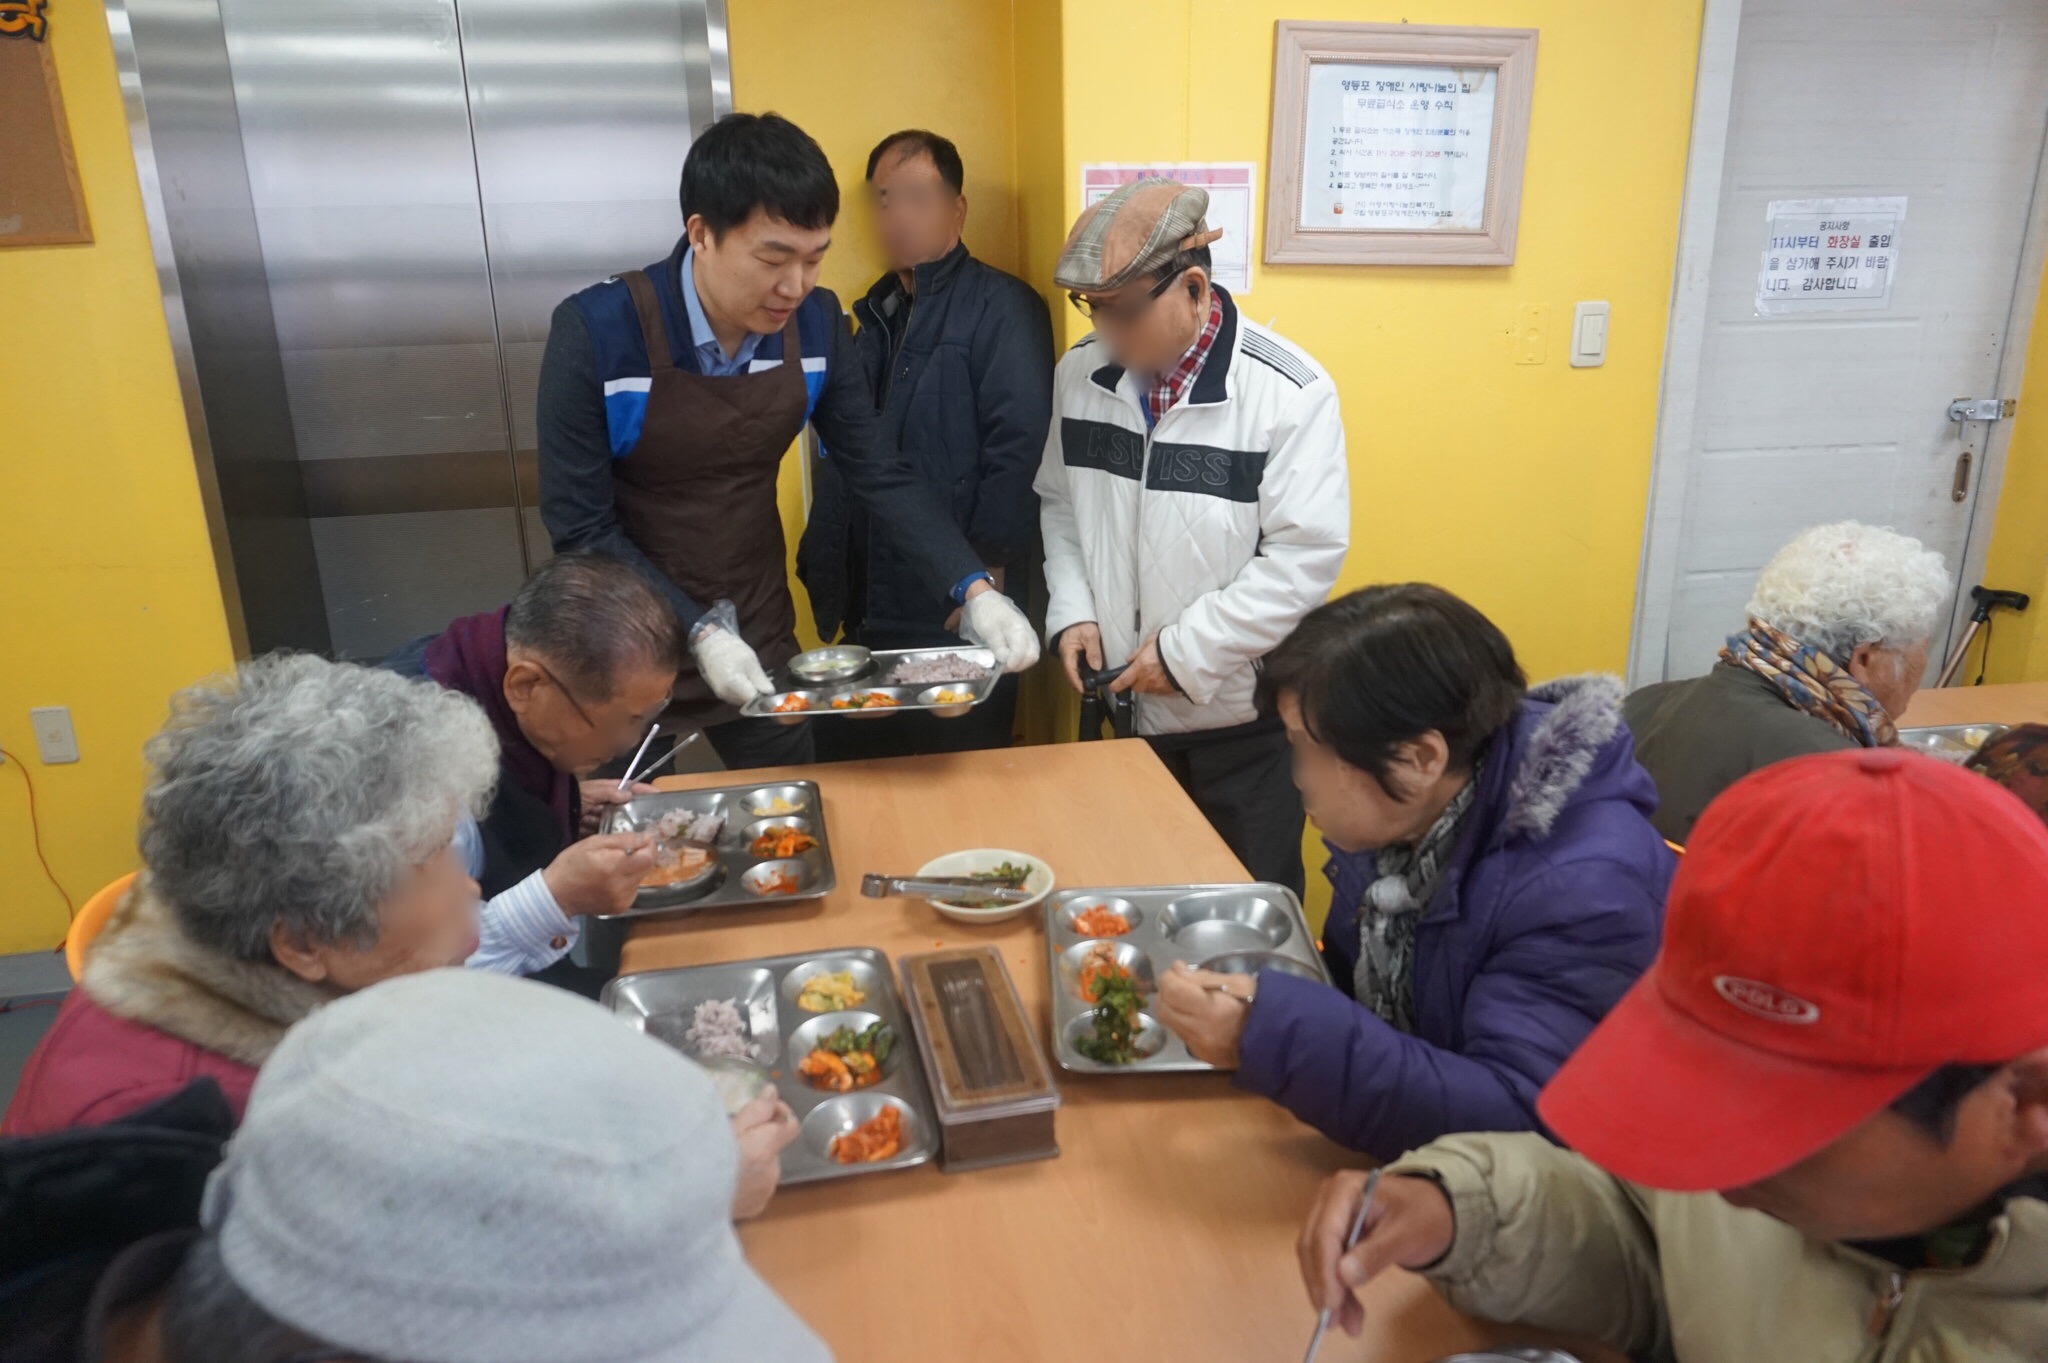 WDU교직원봉사단(서울) 3월 자원봉사 활동